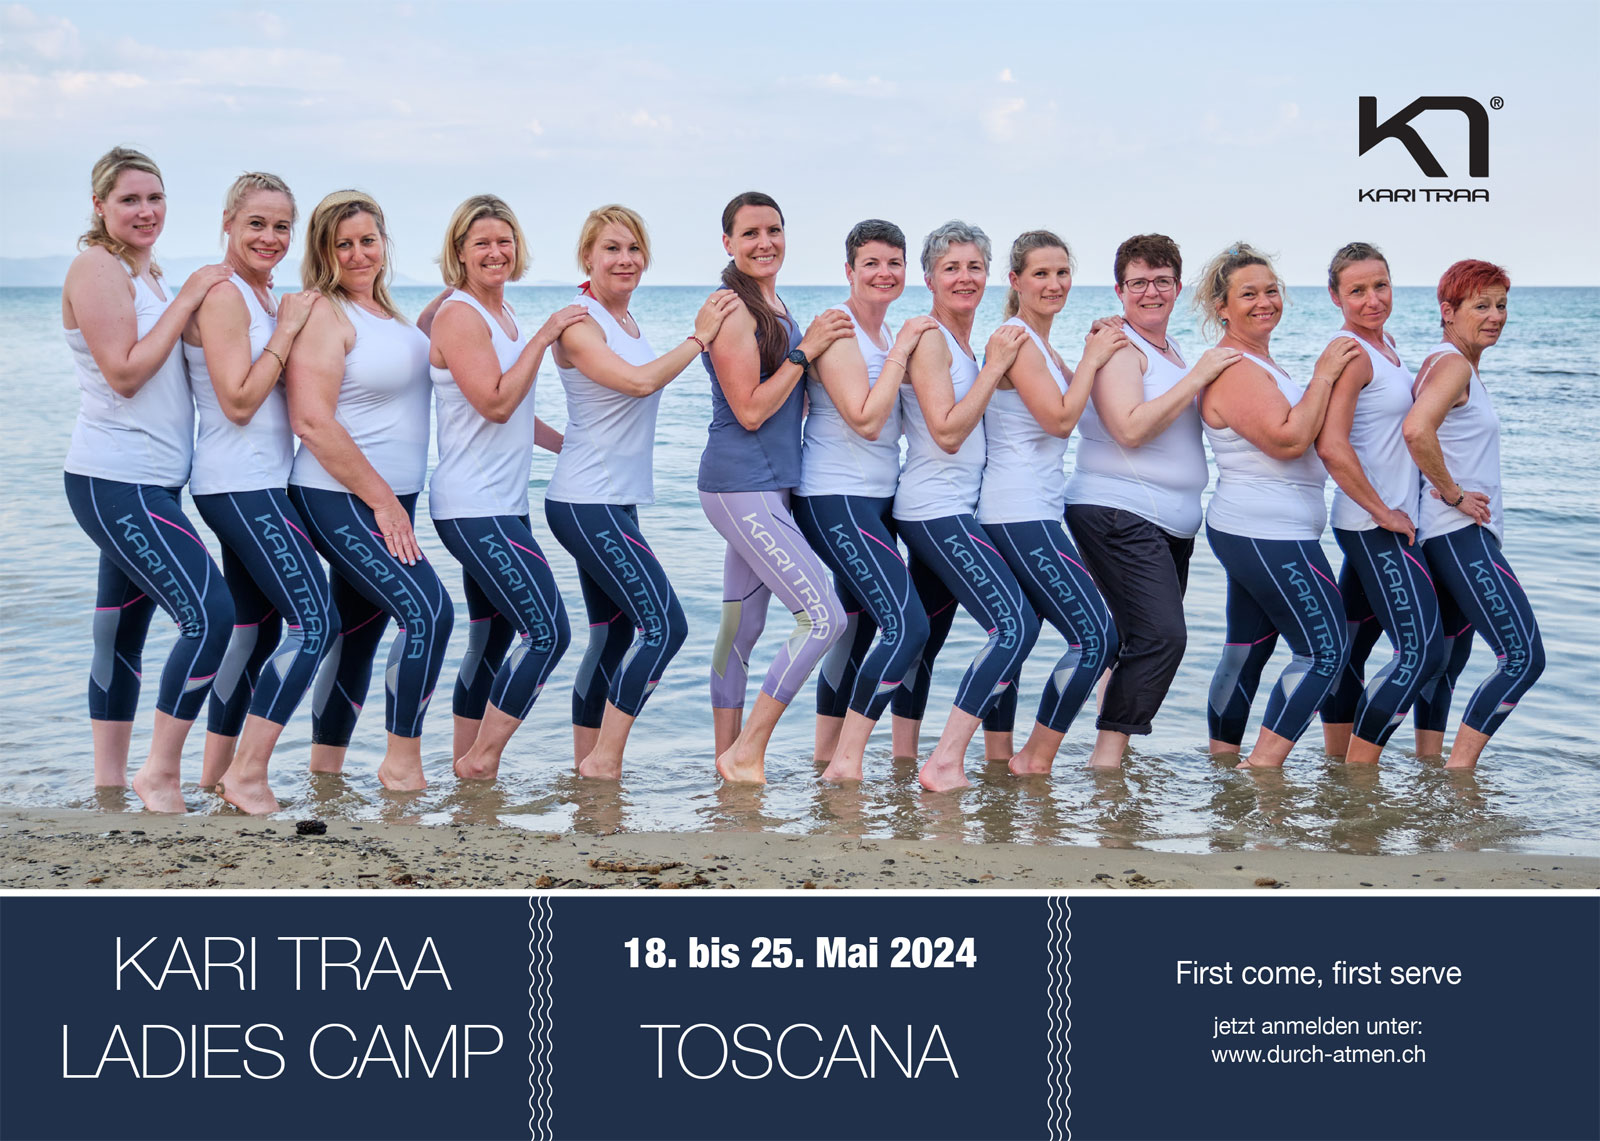 karitraa_ladiescamp_toscana2023